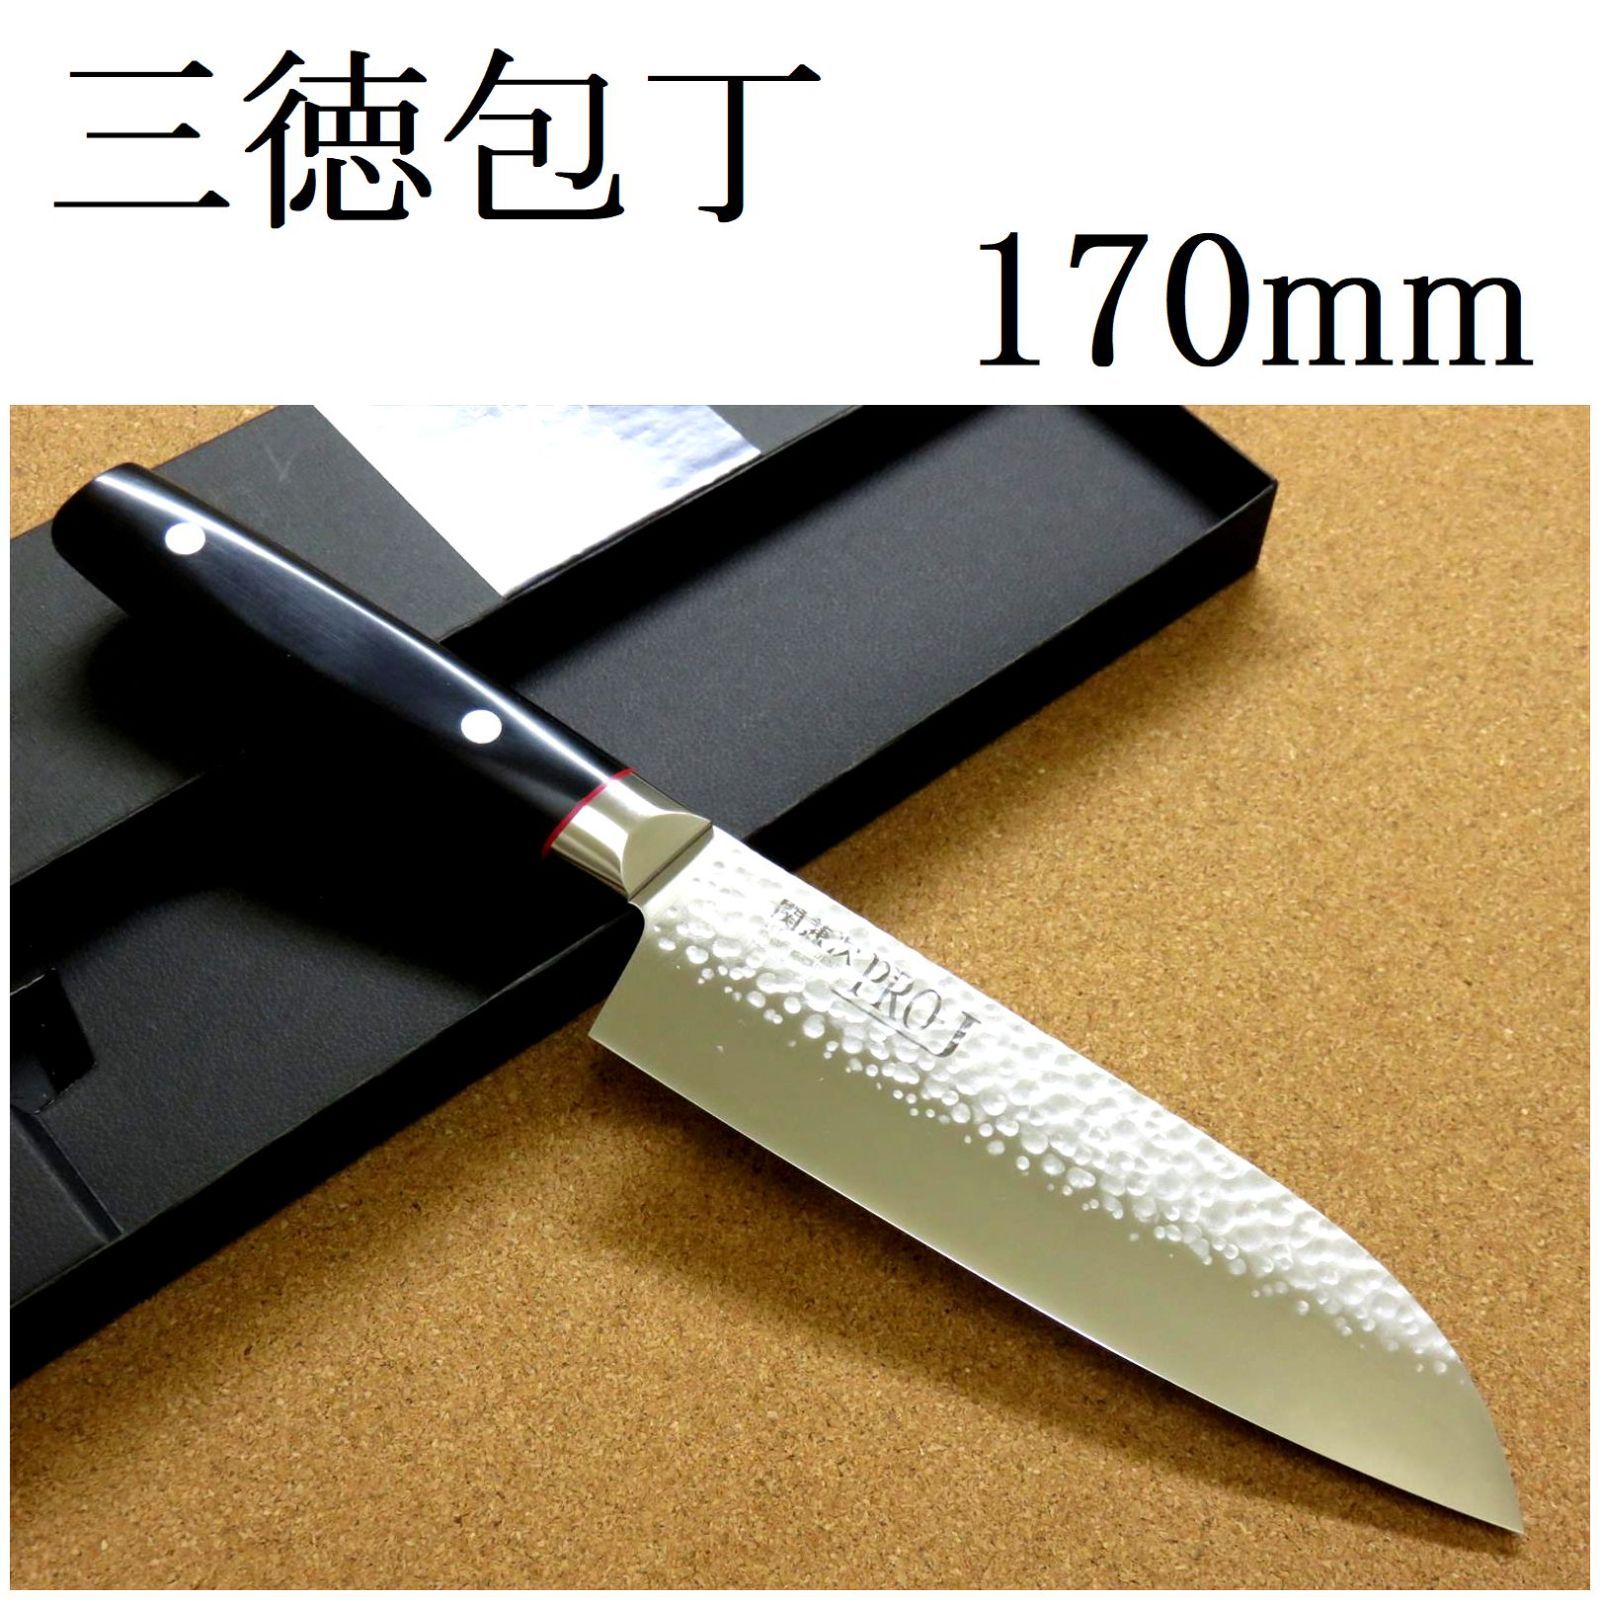 関の刃物 三徳包丁 170mm PRO-J 鎚目鍛造 3層鋼 万能 料理ナイフ-